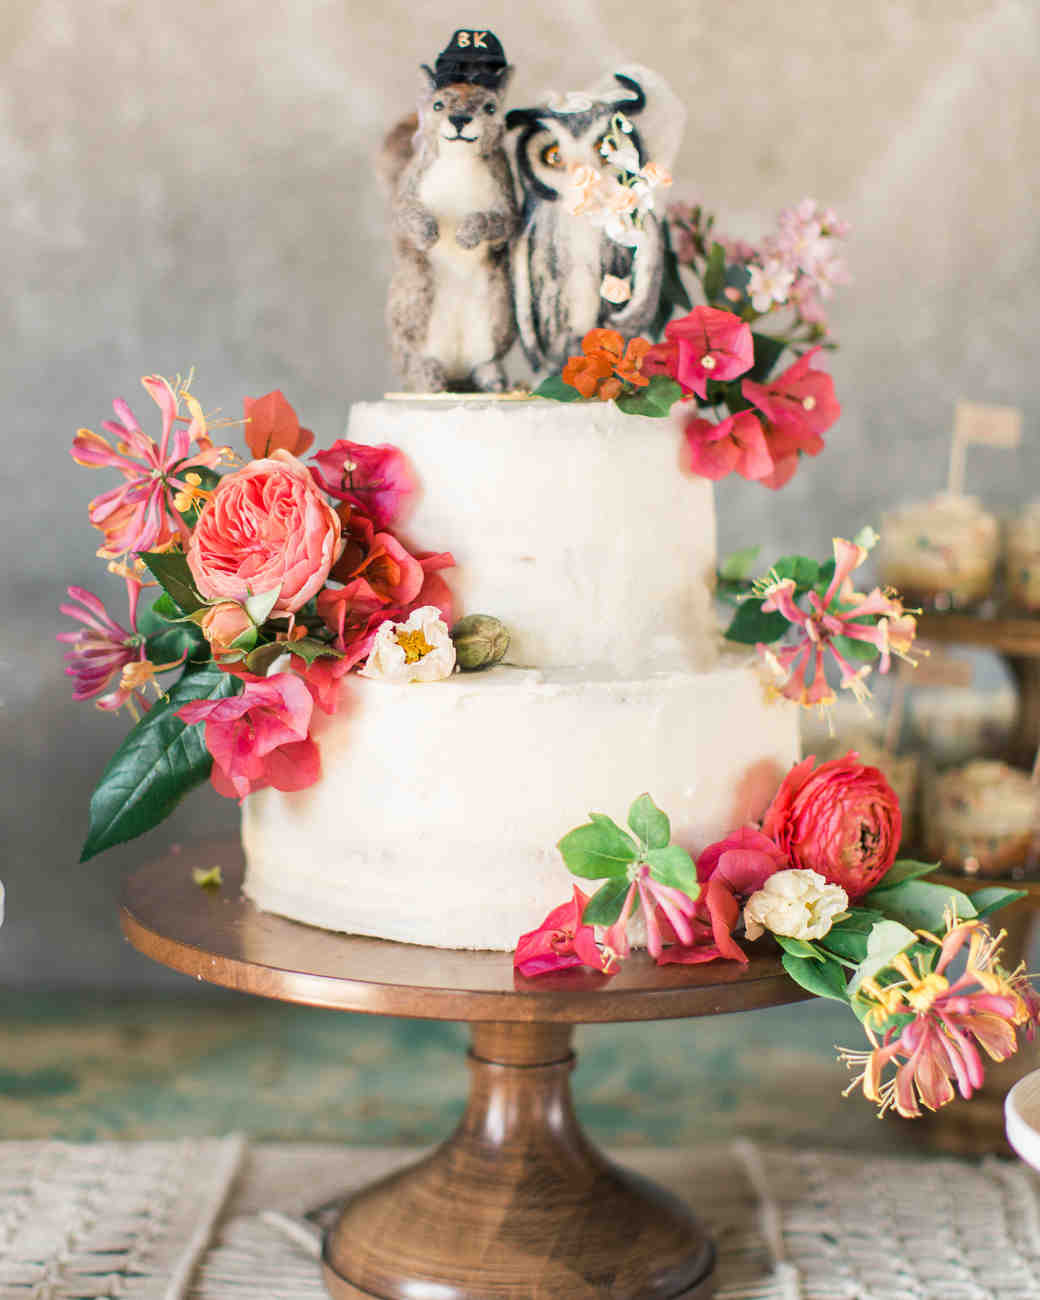 The Best Wedding Cakes
 The 25 Best Wedding Cakes